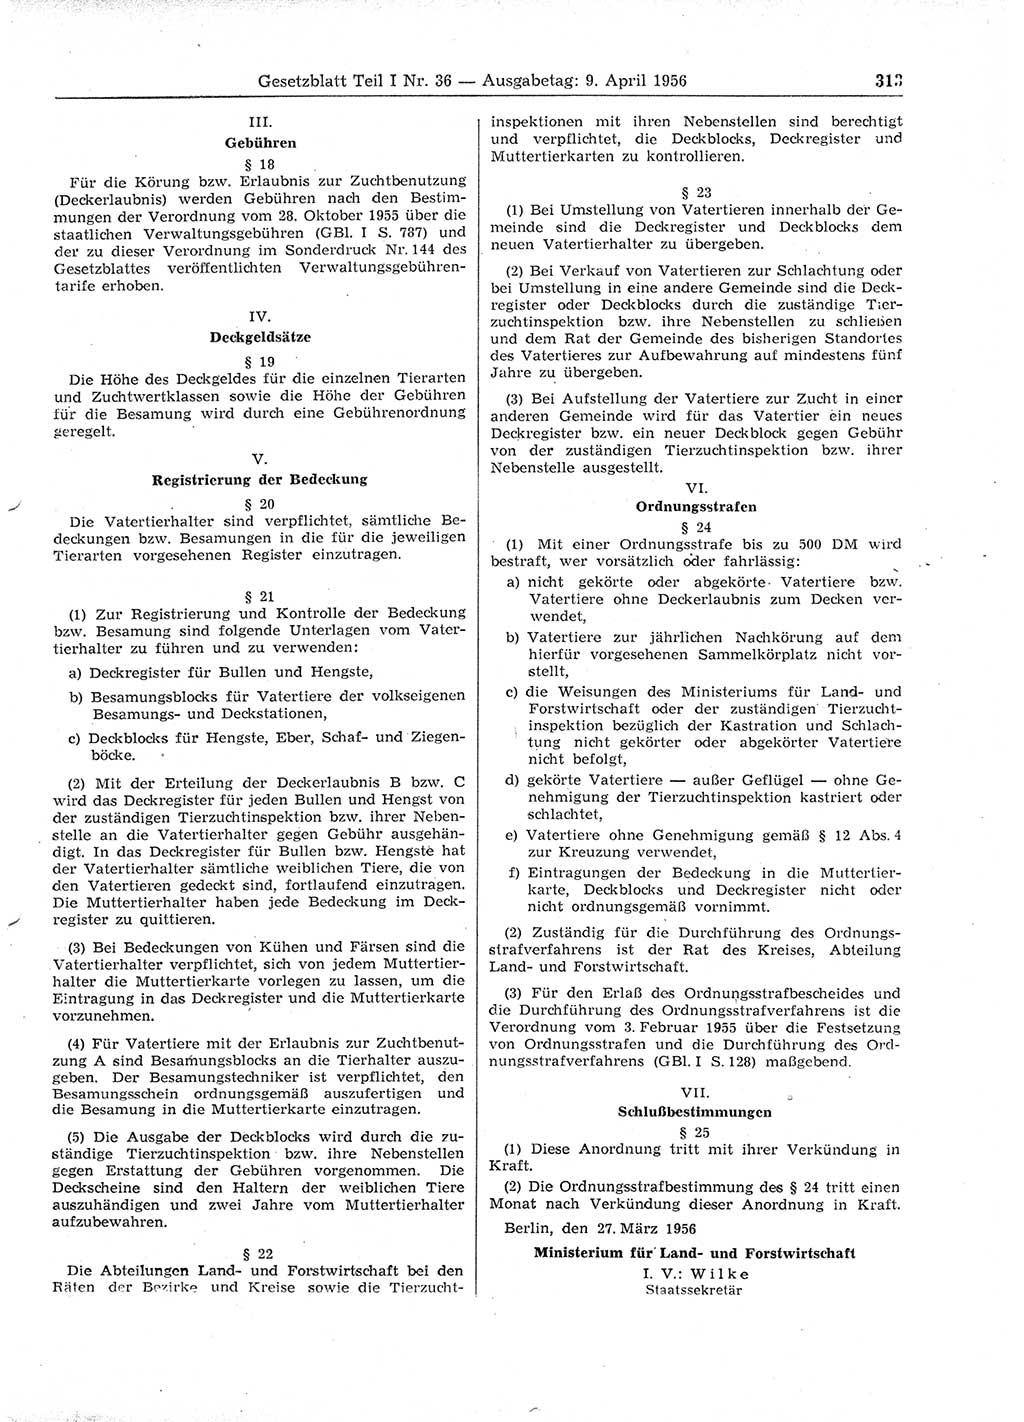 Gesetzblatt (GBl.) der Deutschen Demokratischen Republik (DDR) Teil Ⅰ 1956, Seite 313 (GBl. DDR Ⅰ 1956, S. 313)